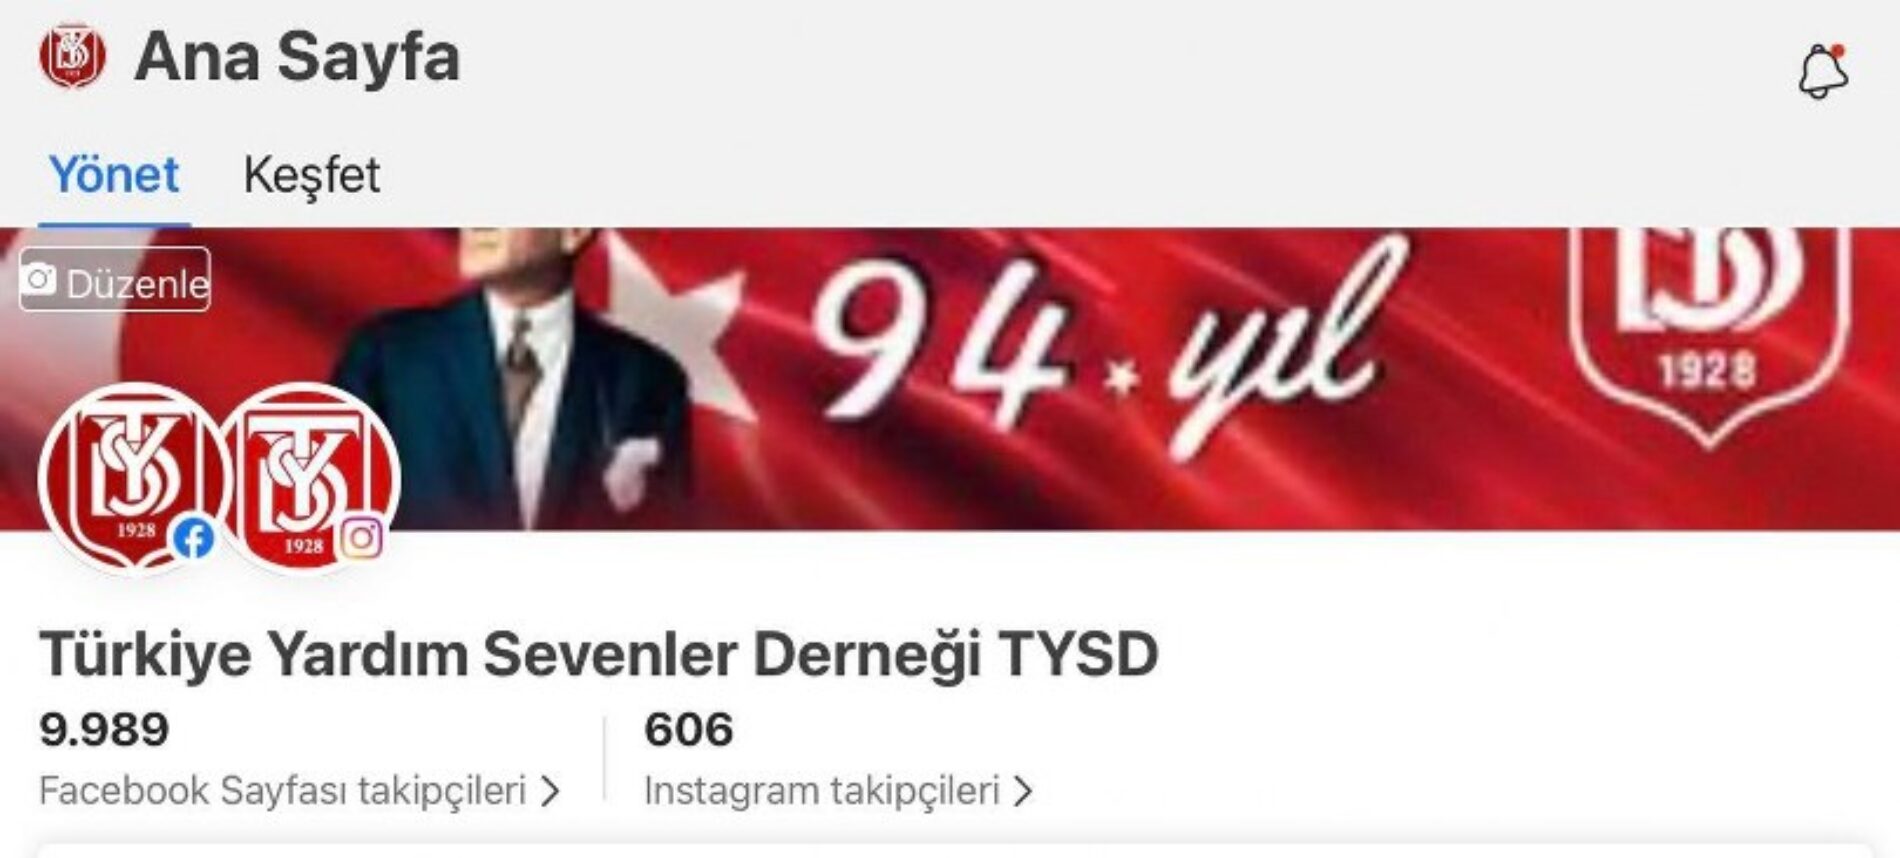 TYSD Genel Merkezi ve 131 Şubemiz’in Sosyal Medyada Görünürlüğü Artmaktadır